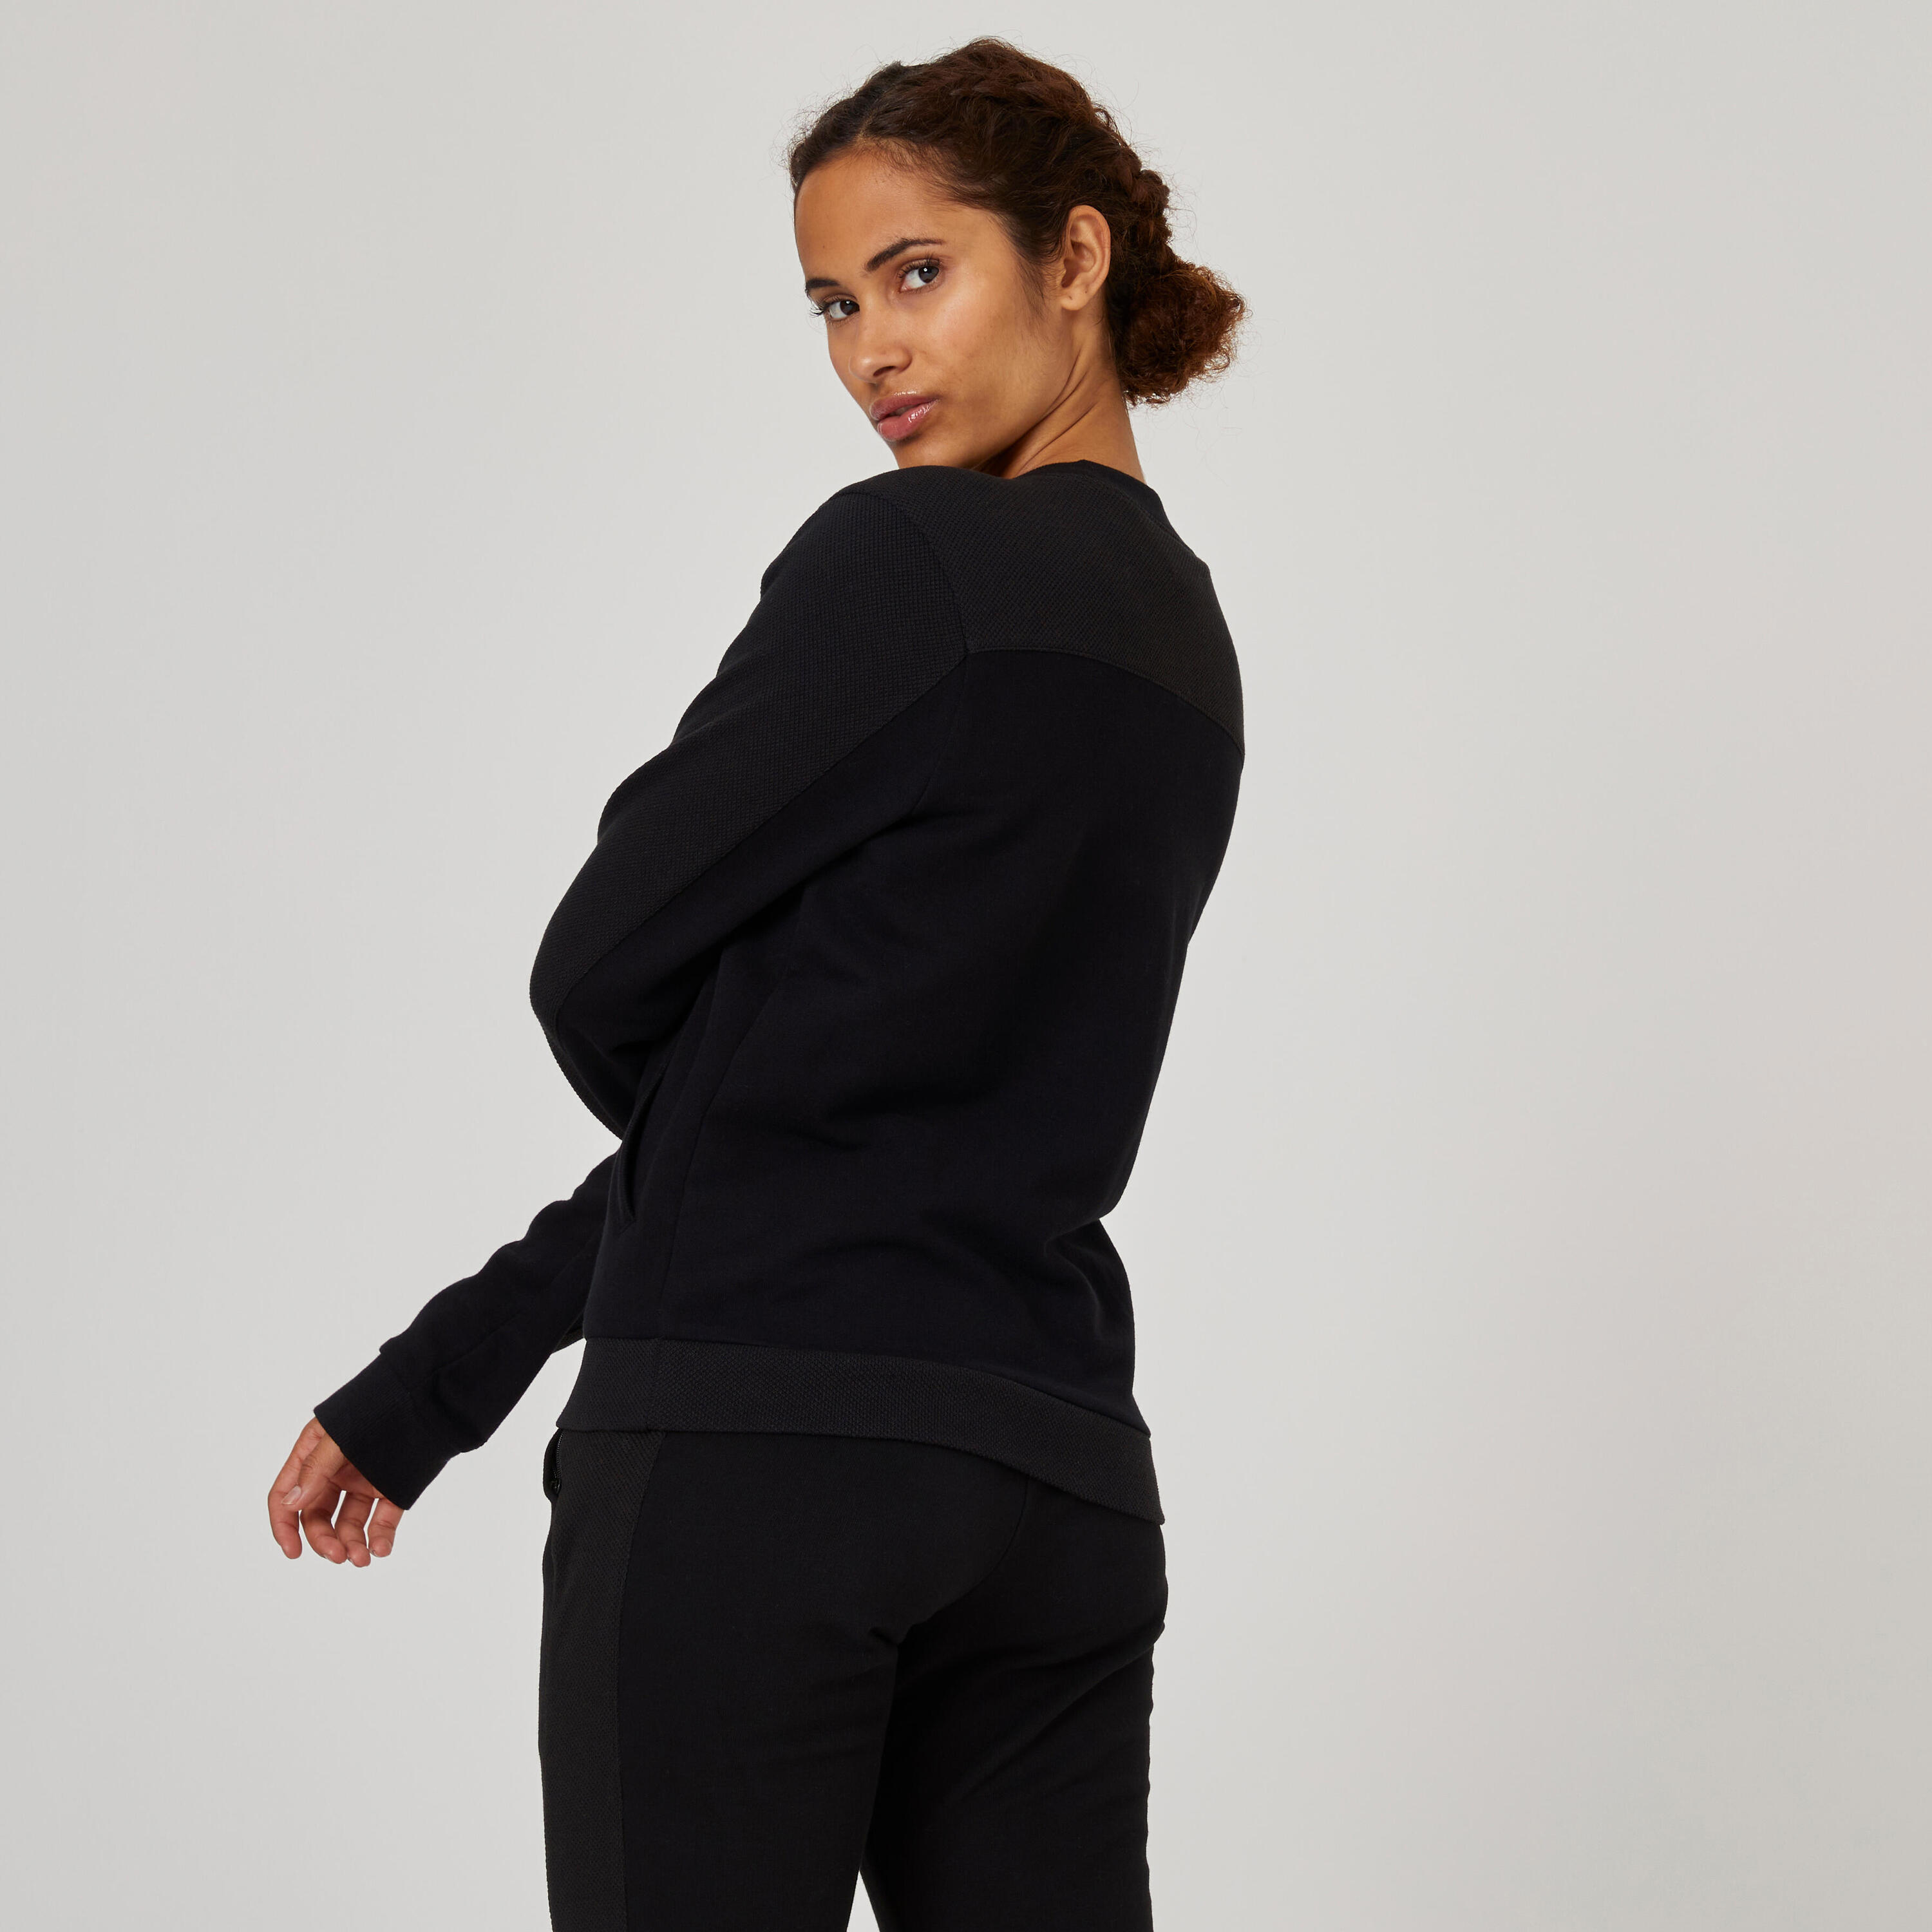 Women's Zip-Up Fitness Sweatshirt 520 - Black 2/5